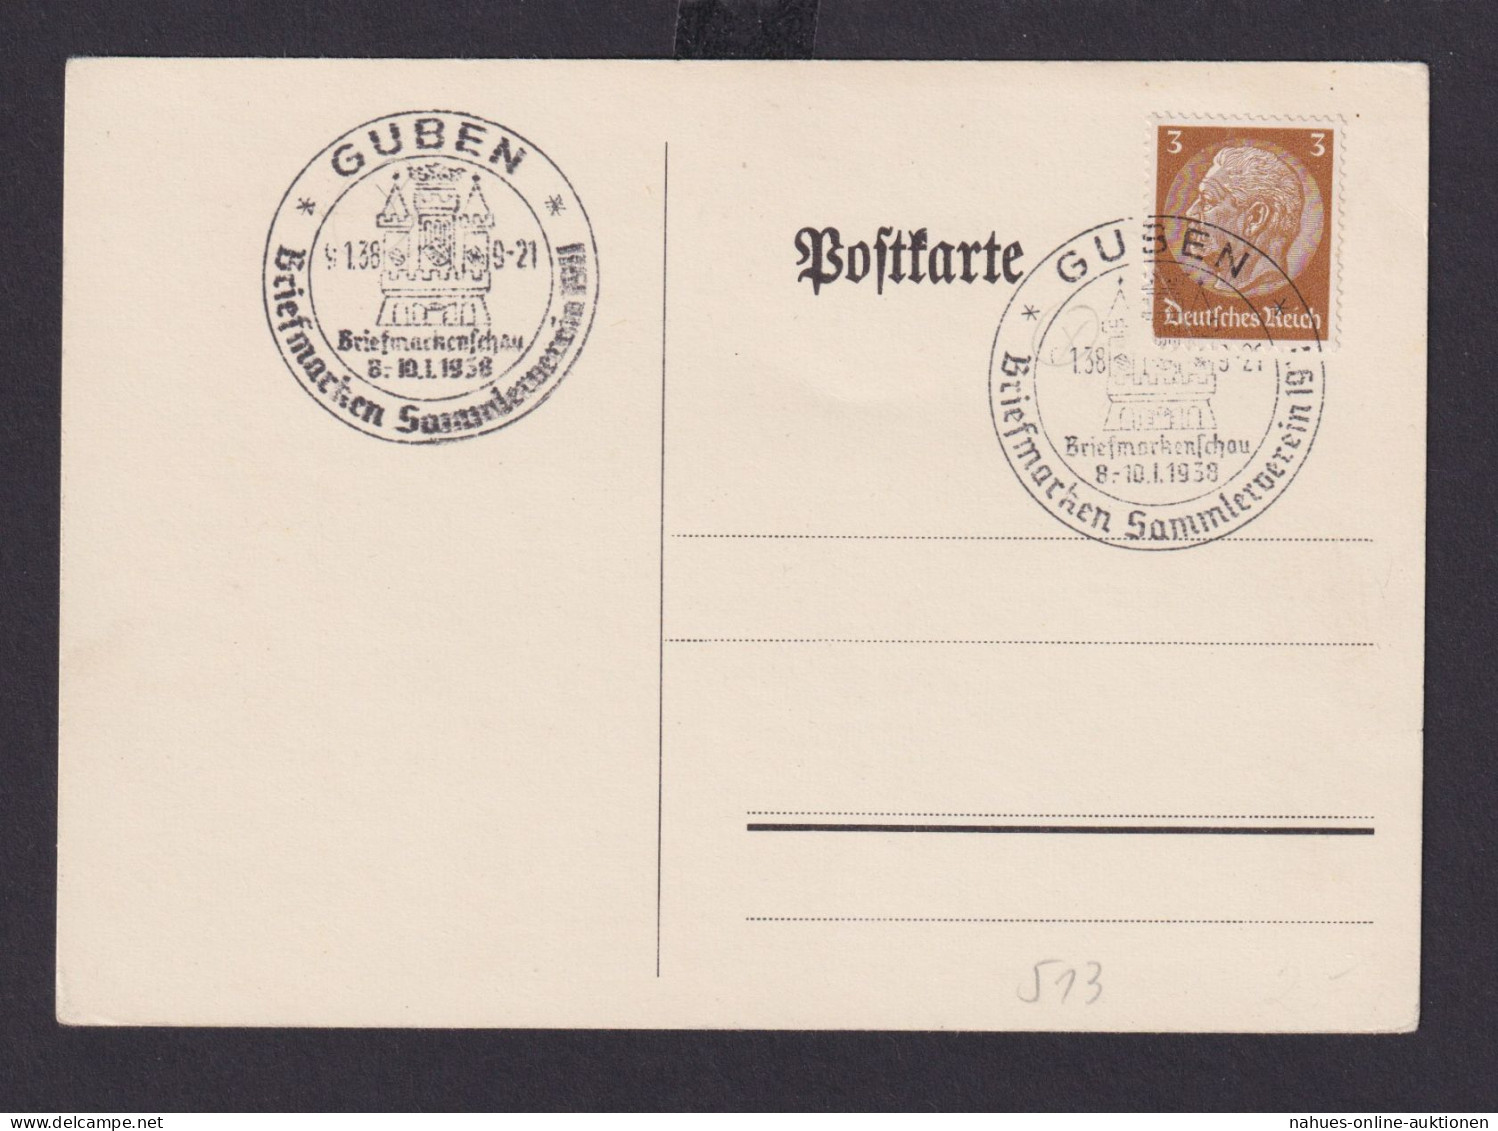 Guben Brandenburg Deutsches Reich Drittes Reich Karte Philatelie SST Briefmarken - Covers & Documents